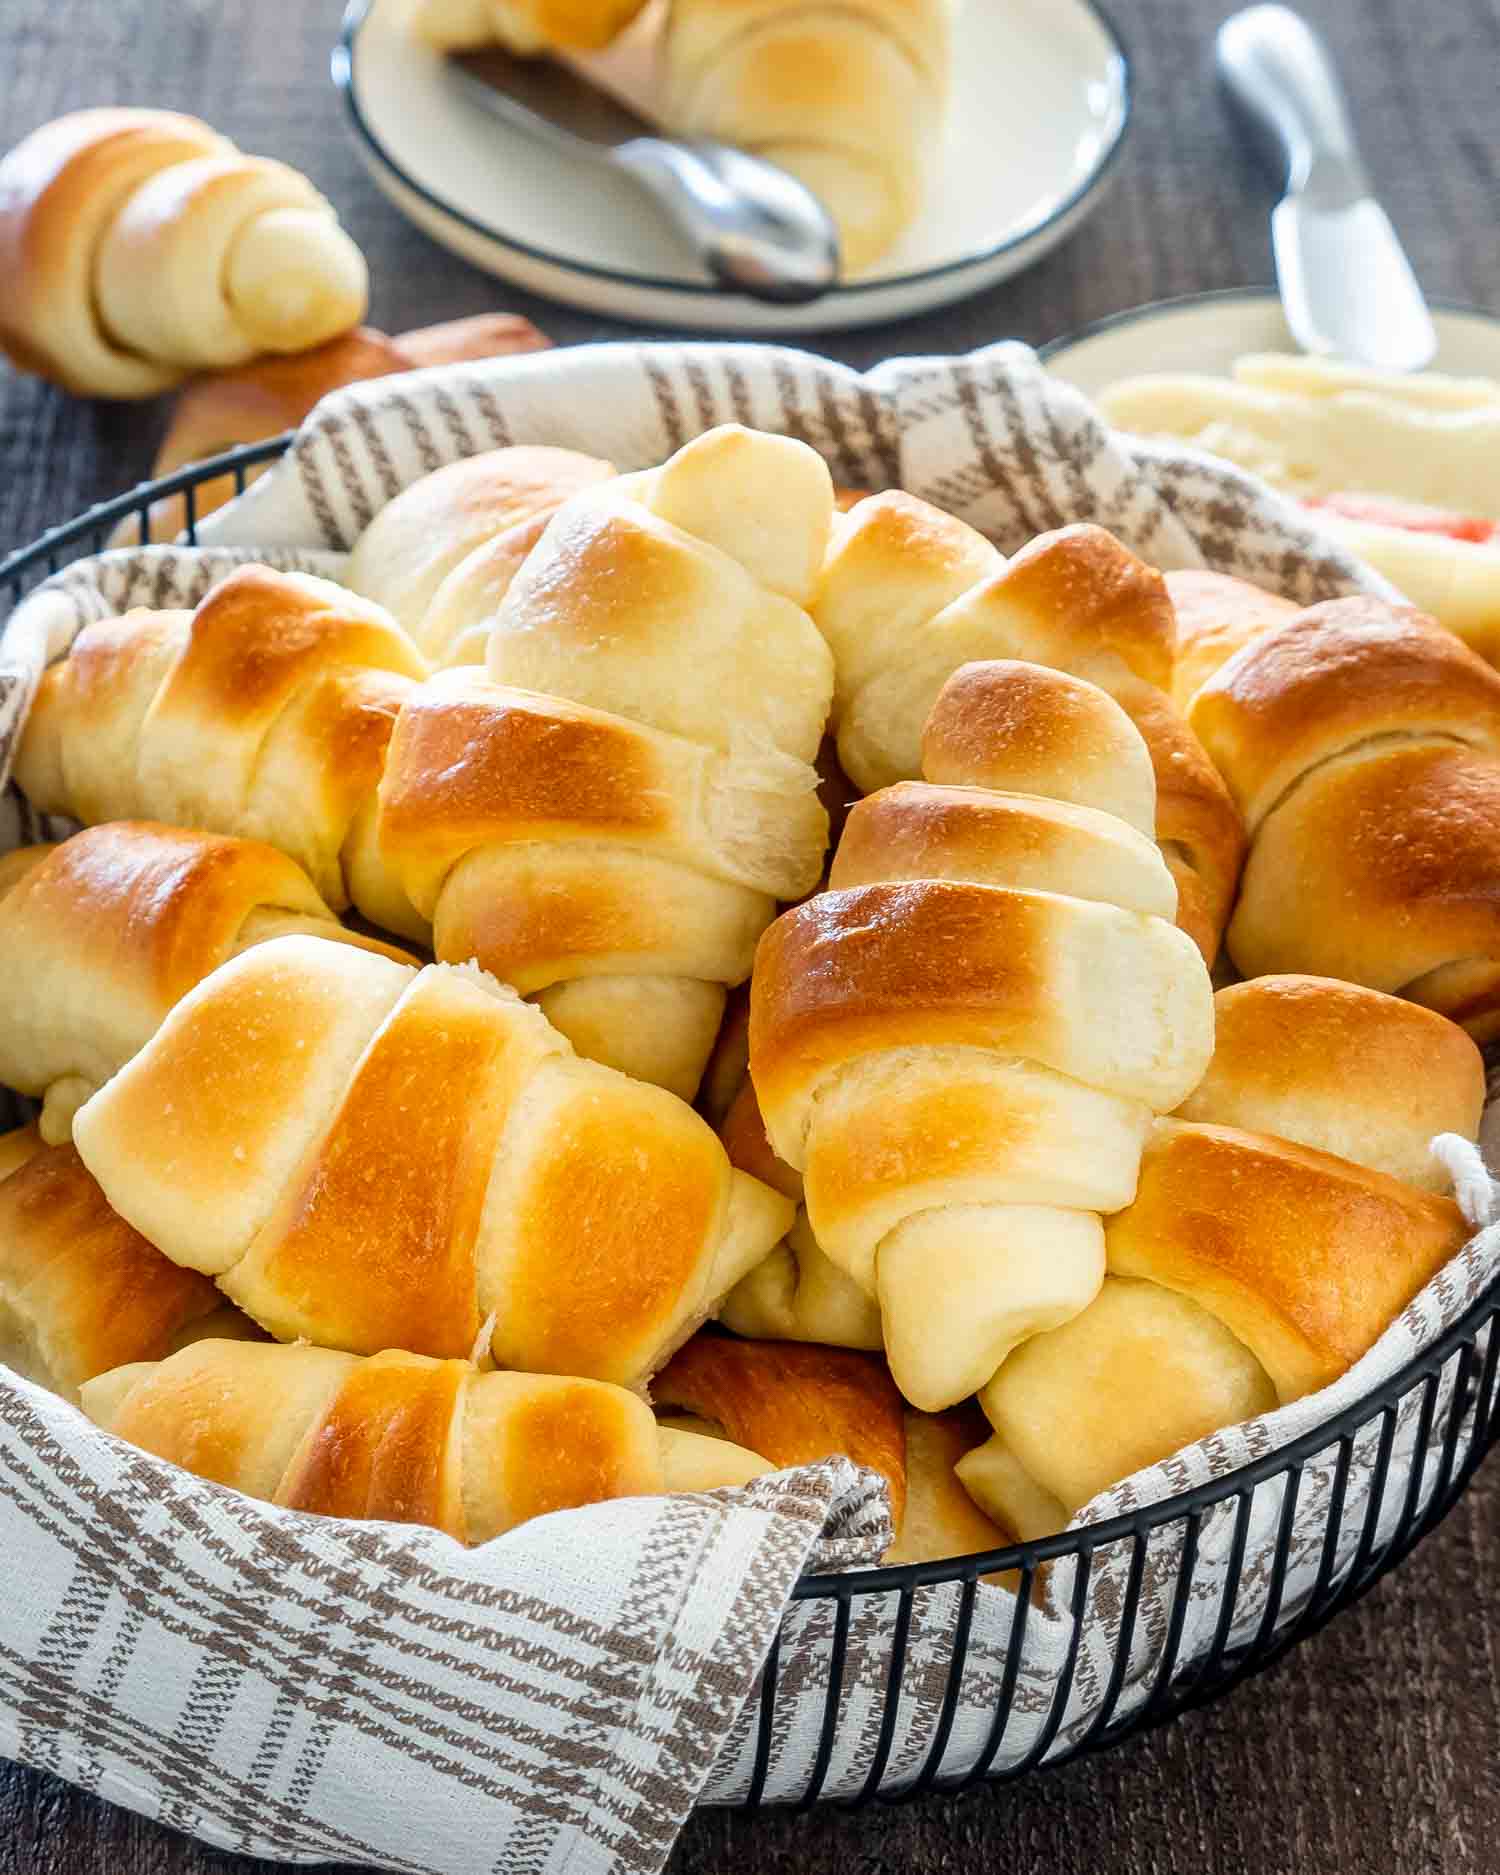 freshly baked crescent rolls in a basket.